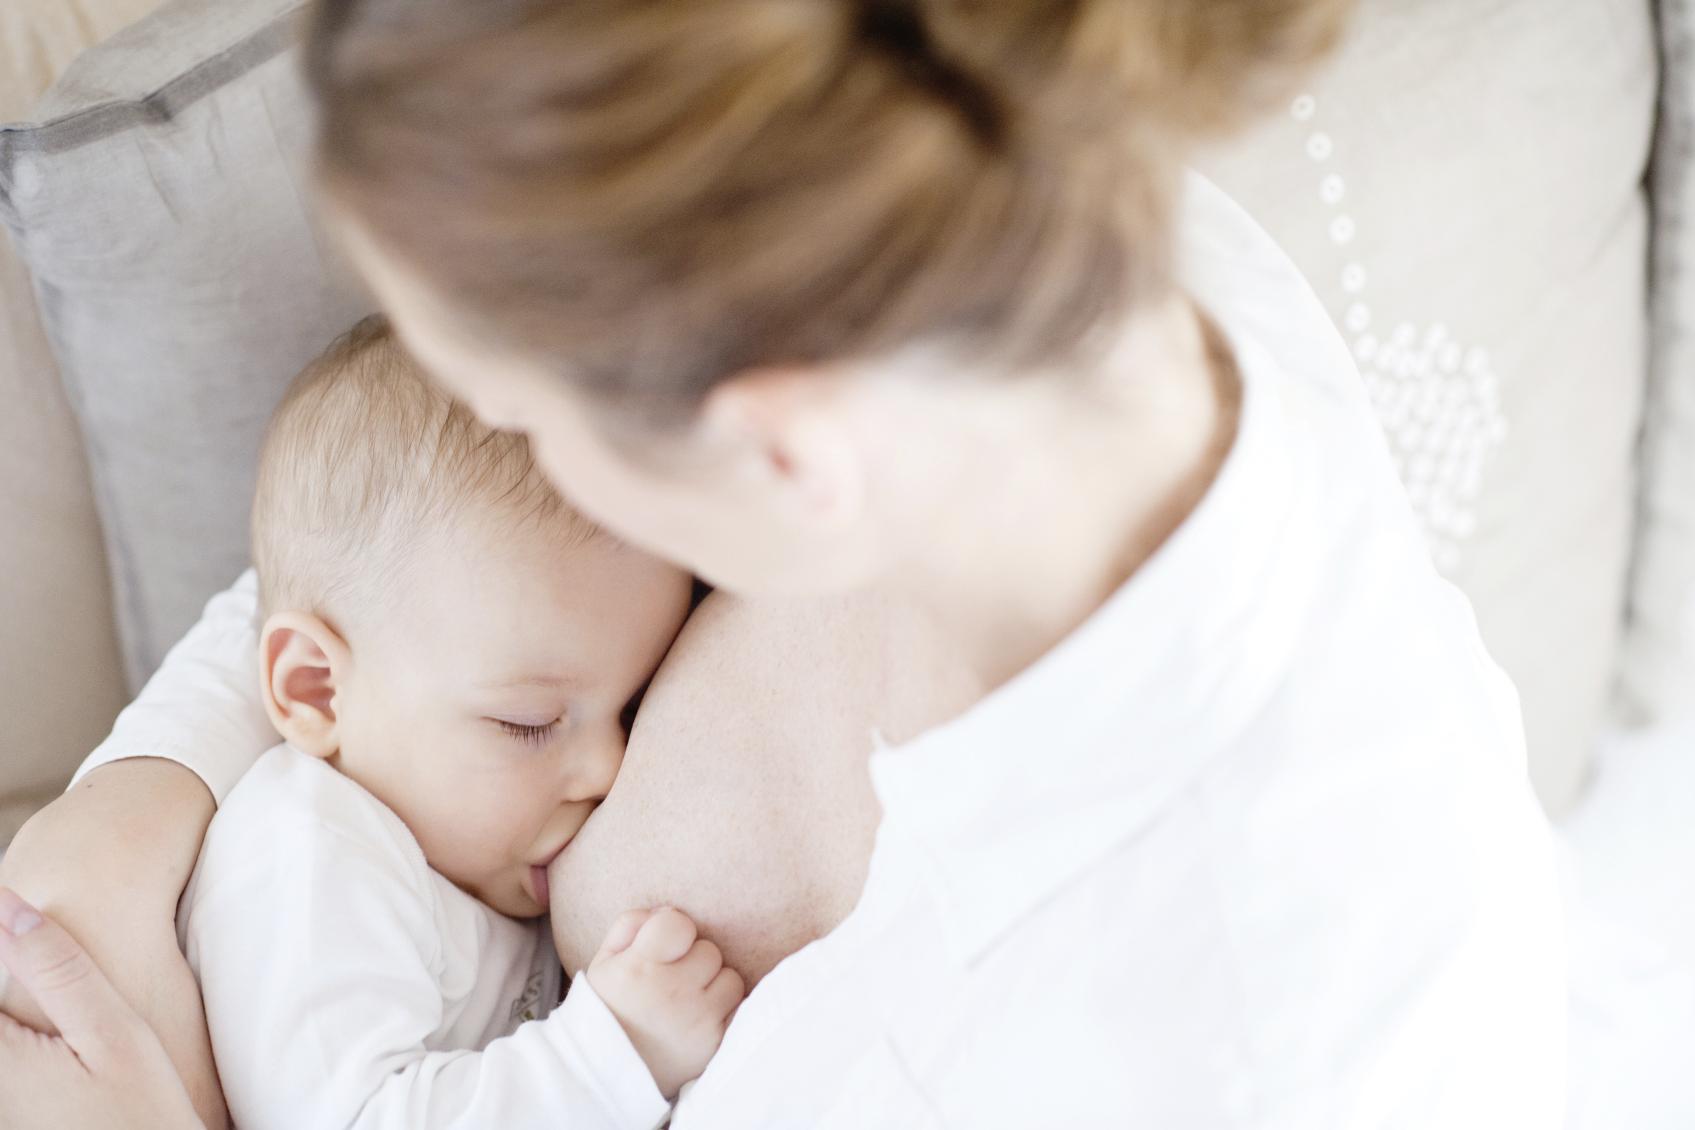 ANGEL'S - bébé & enfant - Un coussin d'allaitement, seulement pour donner  le sein??! Justement non, il peut même vous aider à tenir bébé assis.  Découvrez en image 4 utilisations différentes de